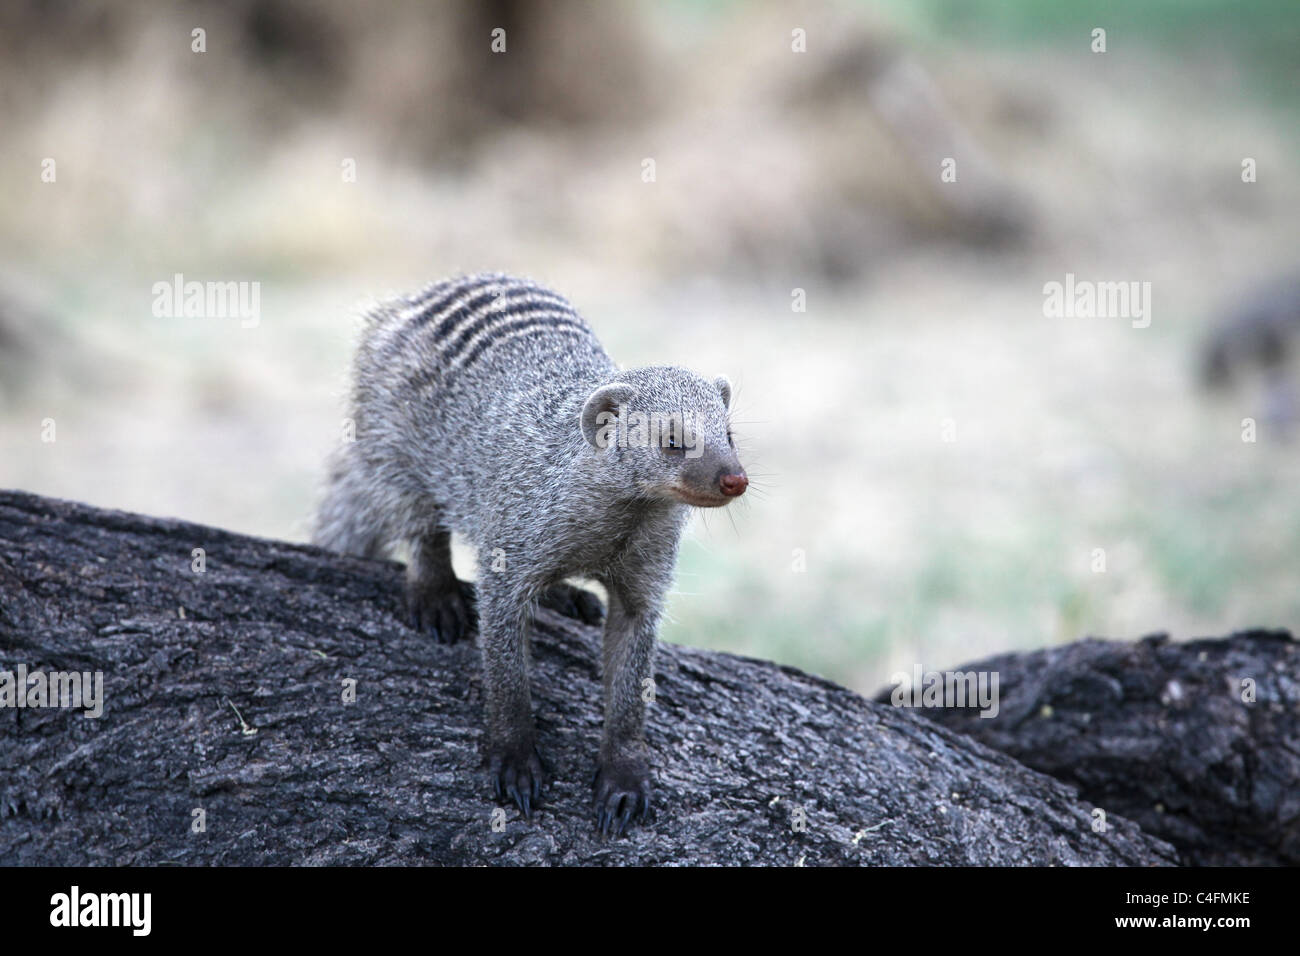 Banded mongoose (Mungos mungo) in Etosha National Park, Namibia Stock Photo